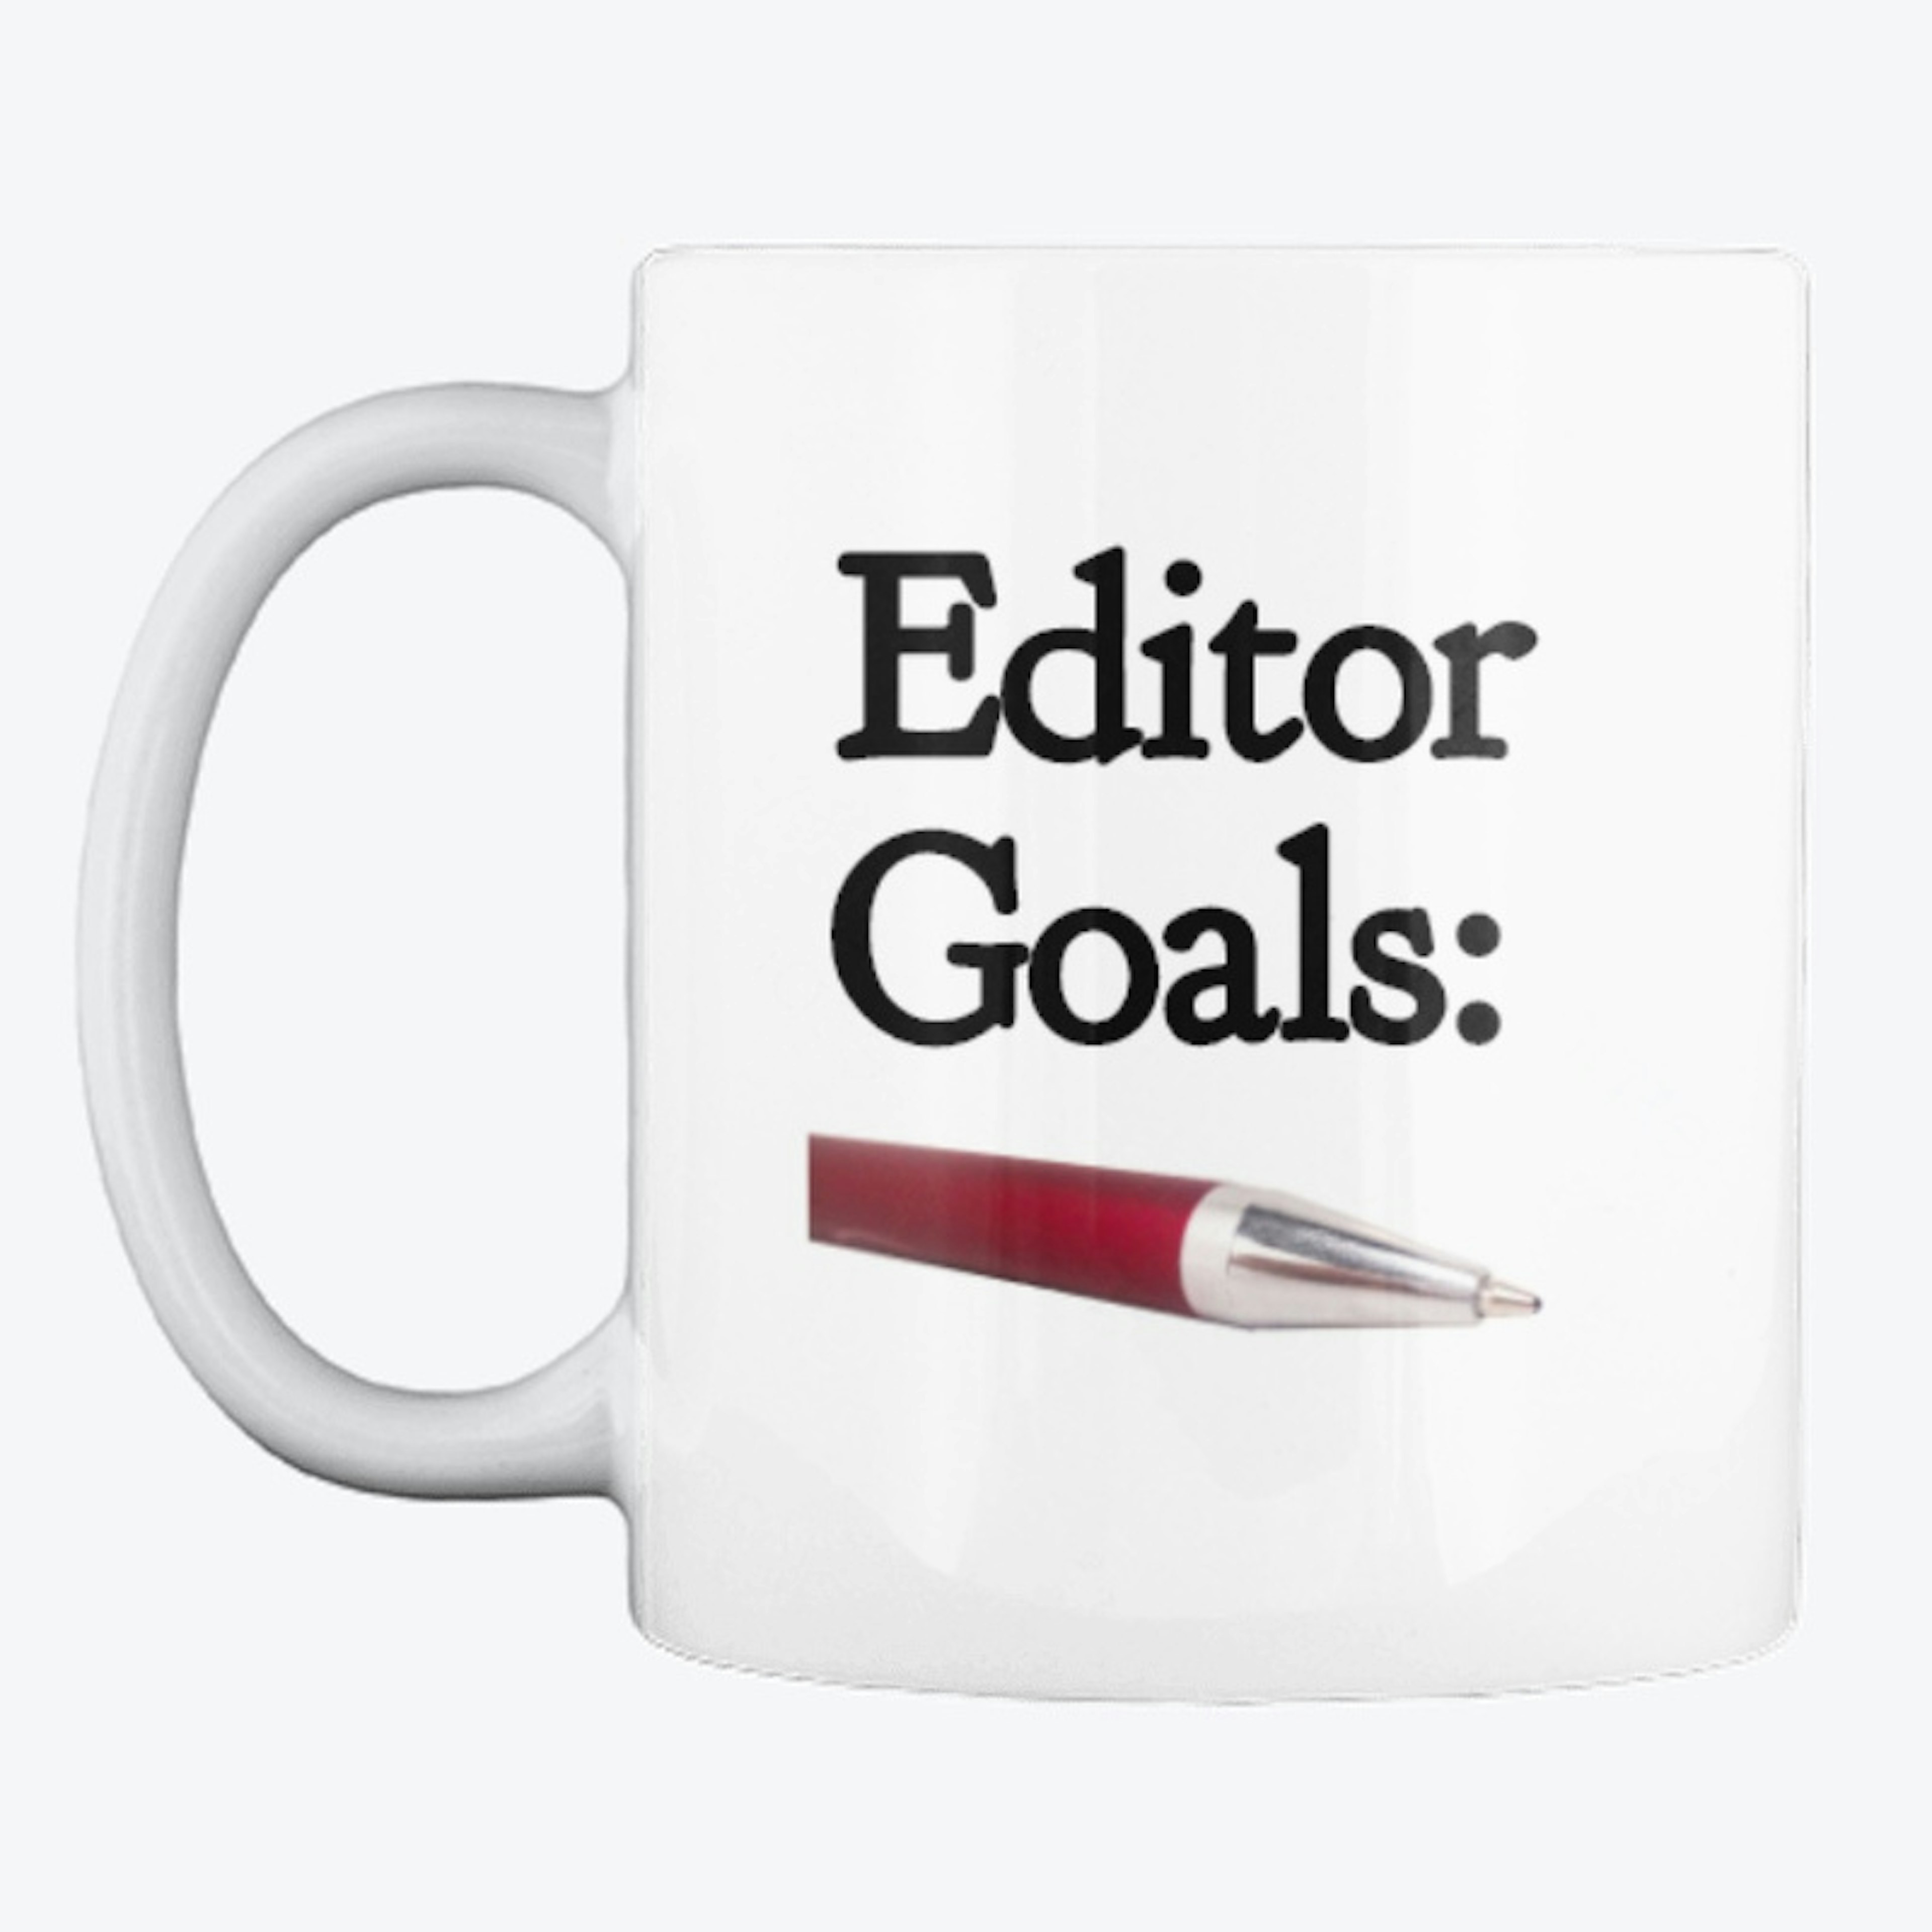 Editors have Goals